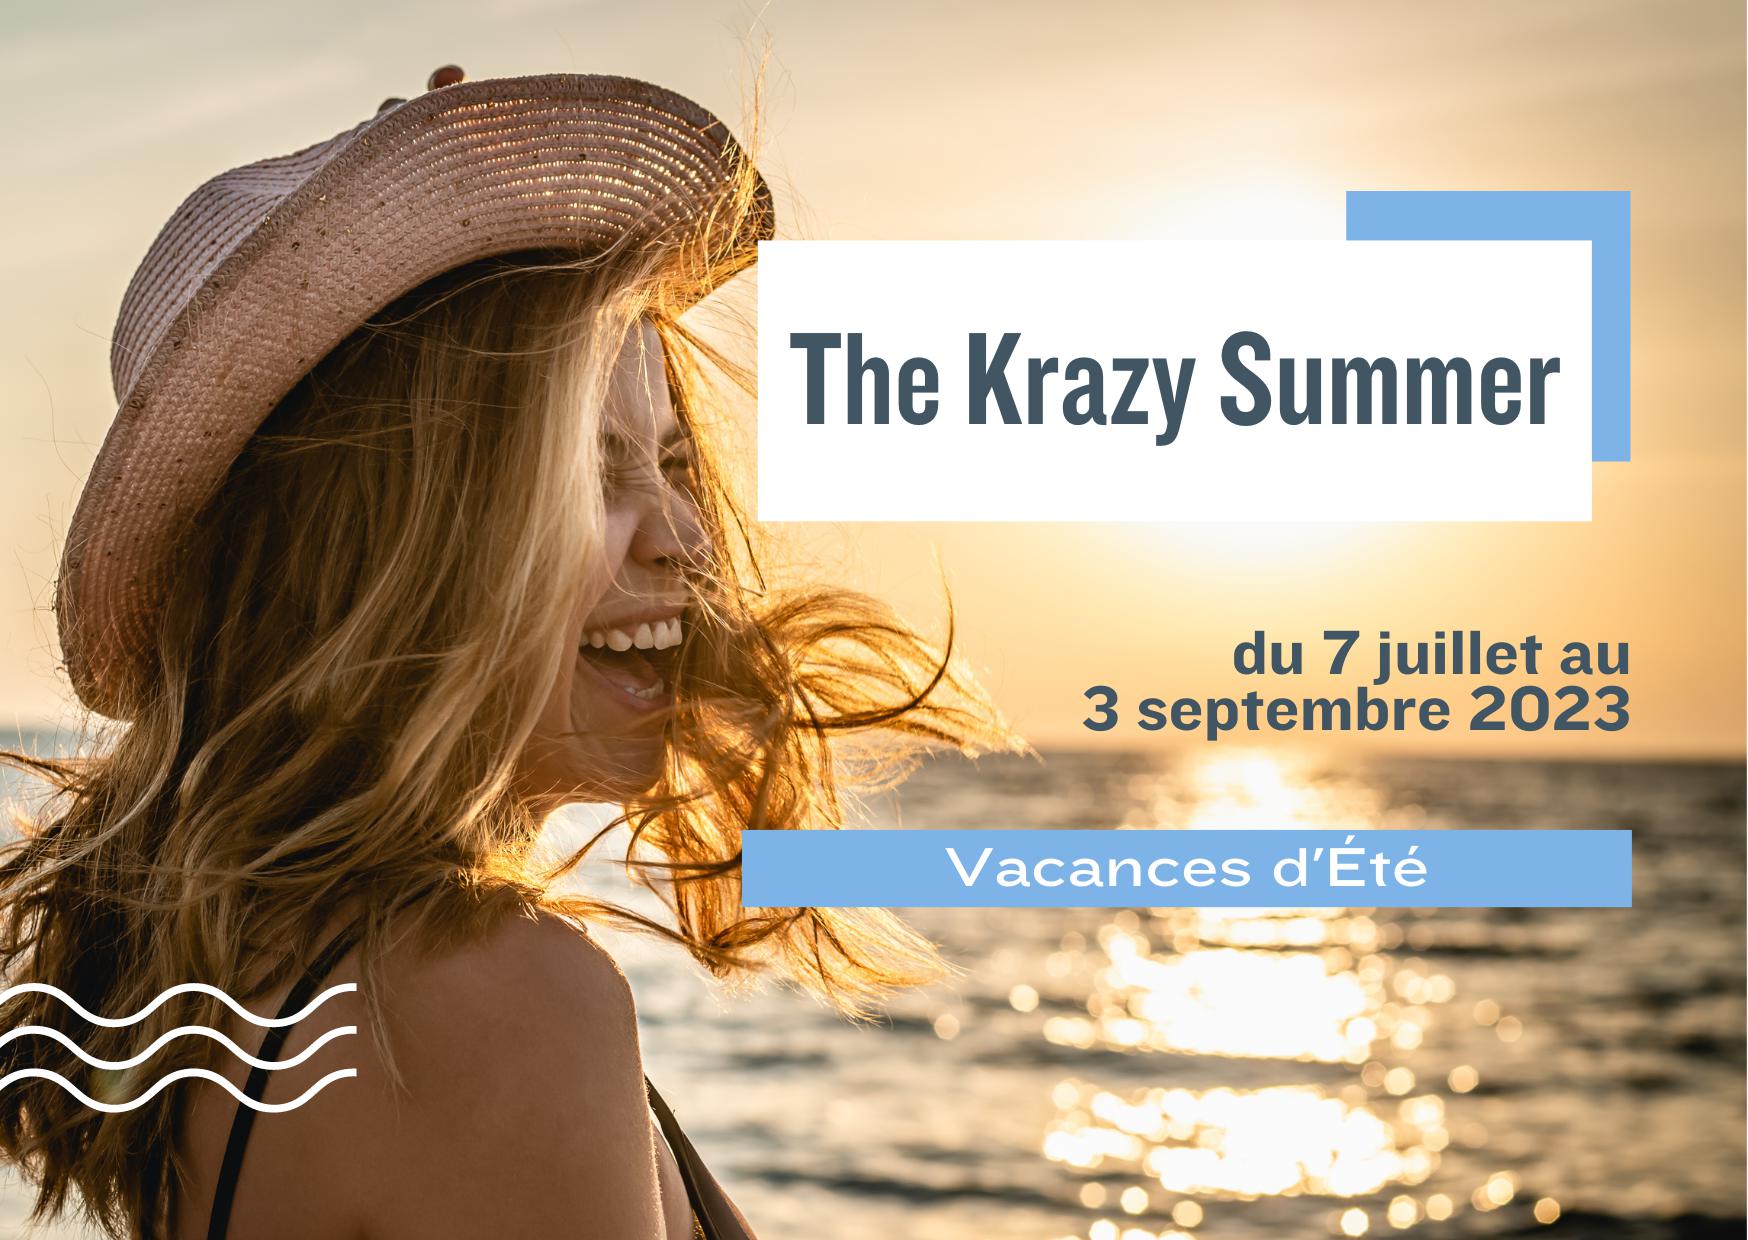 Offre The Krazy Summer : Vacances d’été dans le Morbihan